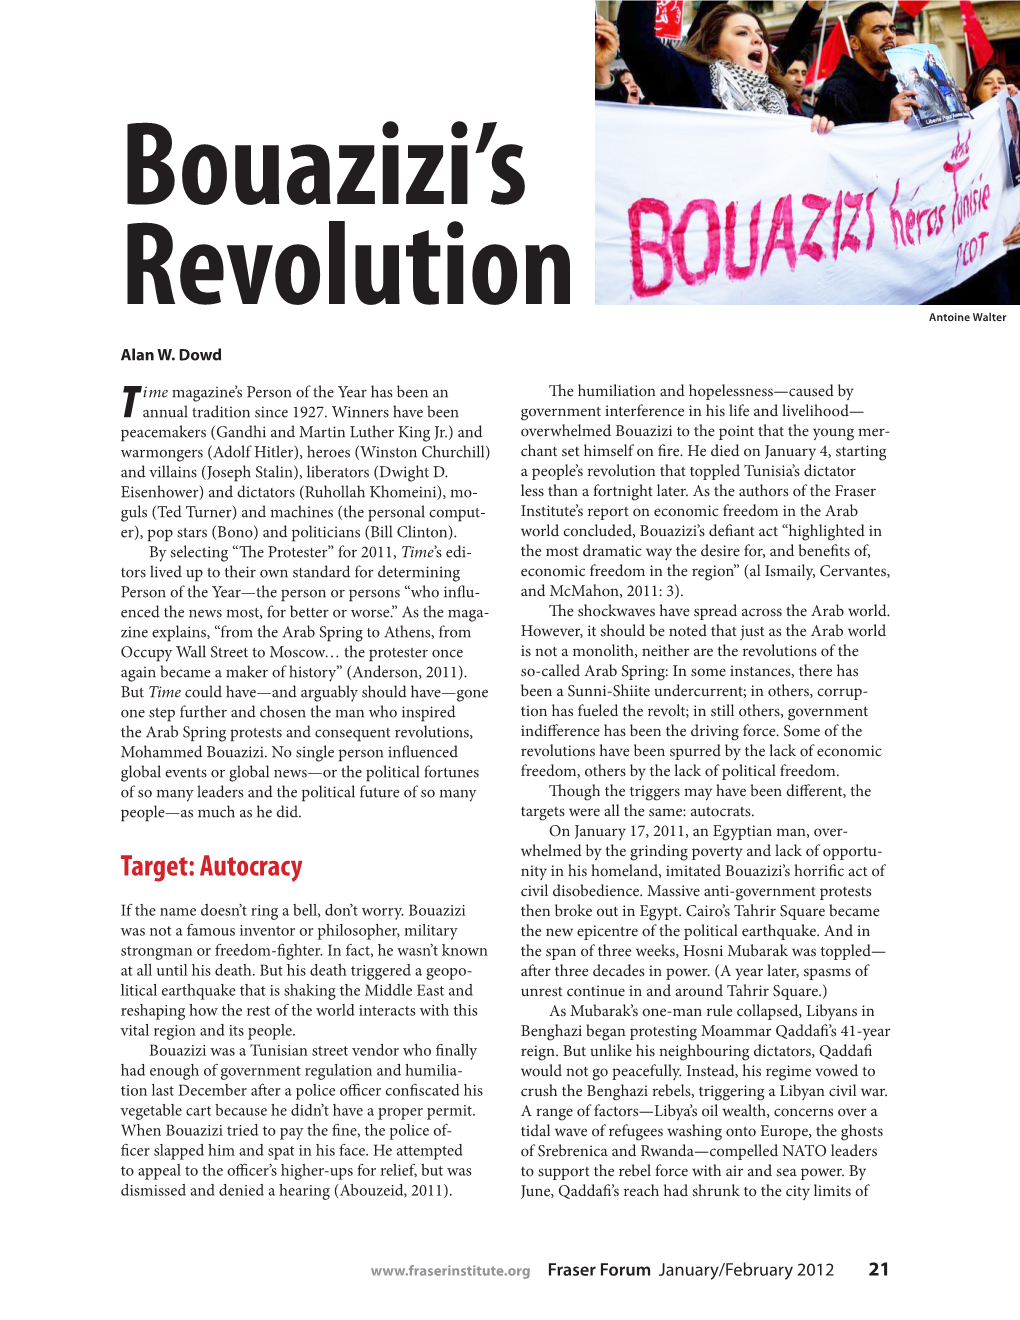 Bouazizi's Revolution